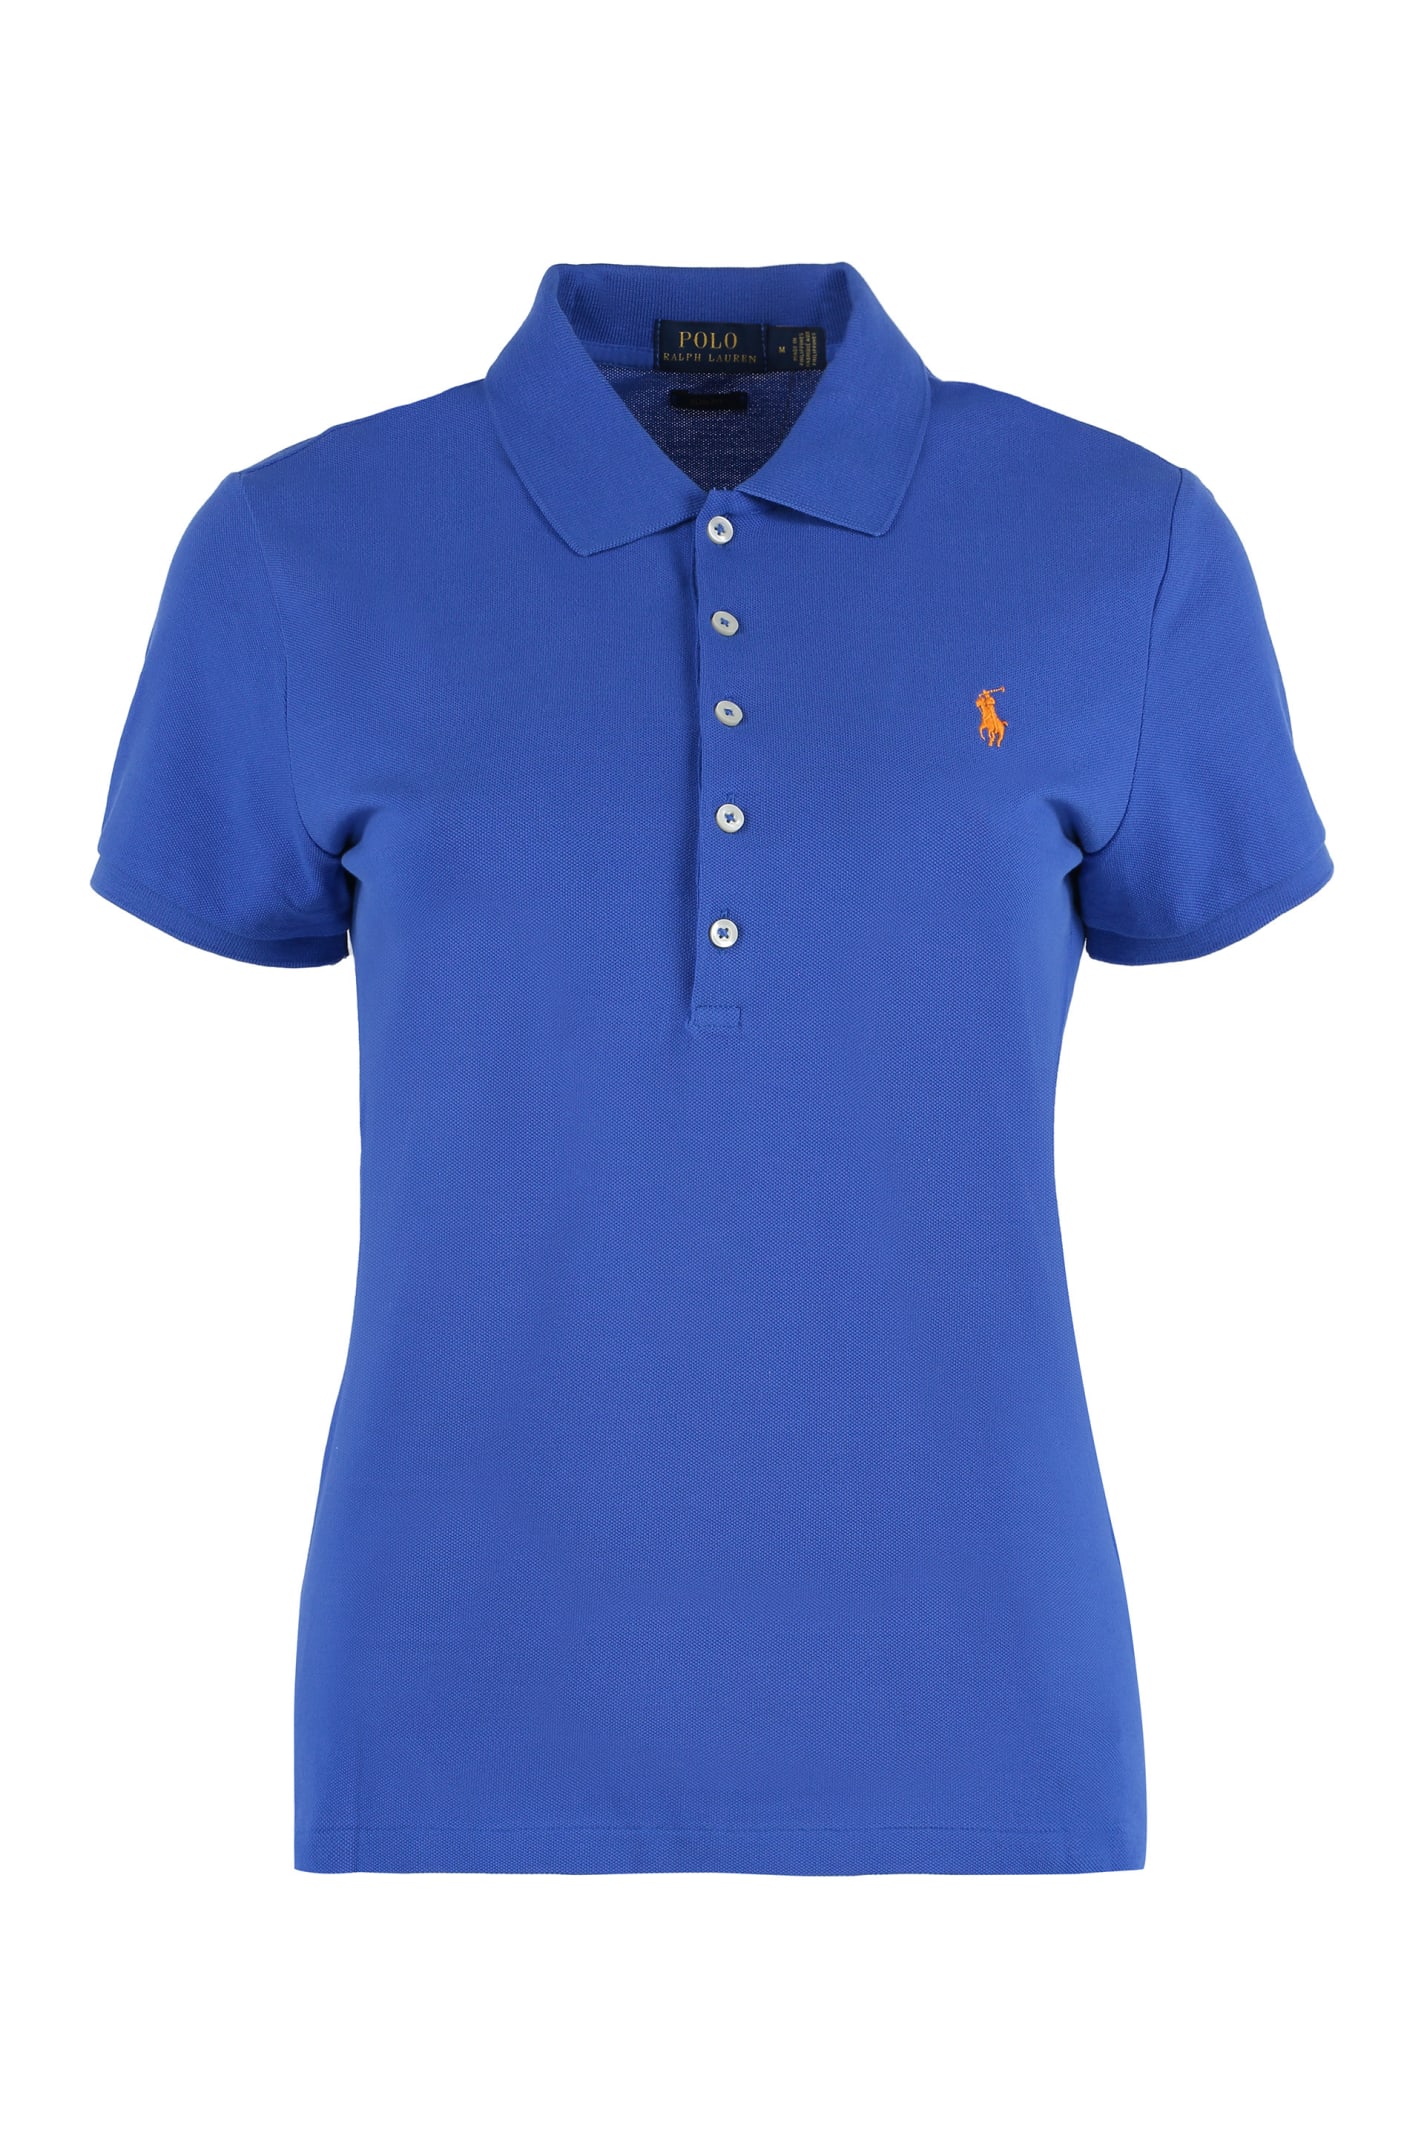 Ralph Lauren Cotton-piqu Olo Shirt In New Iris Blue